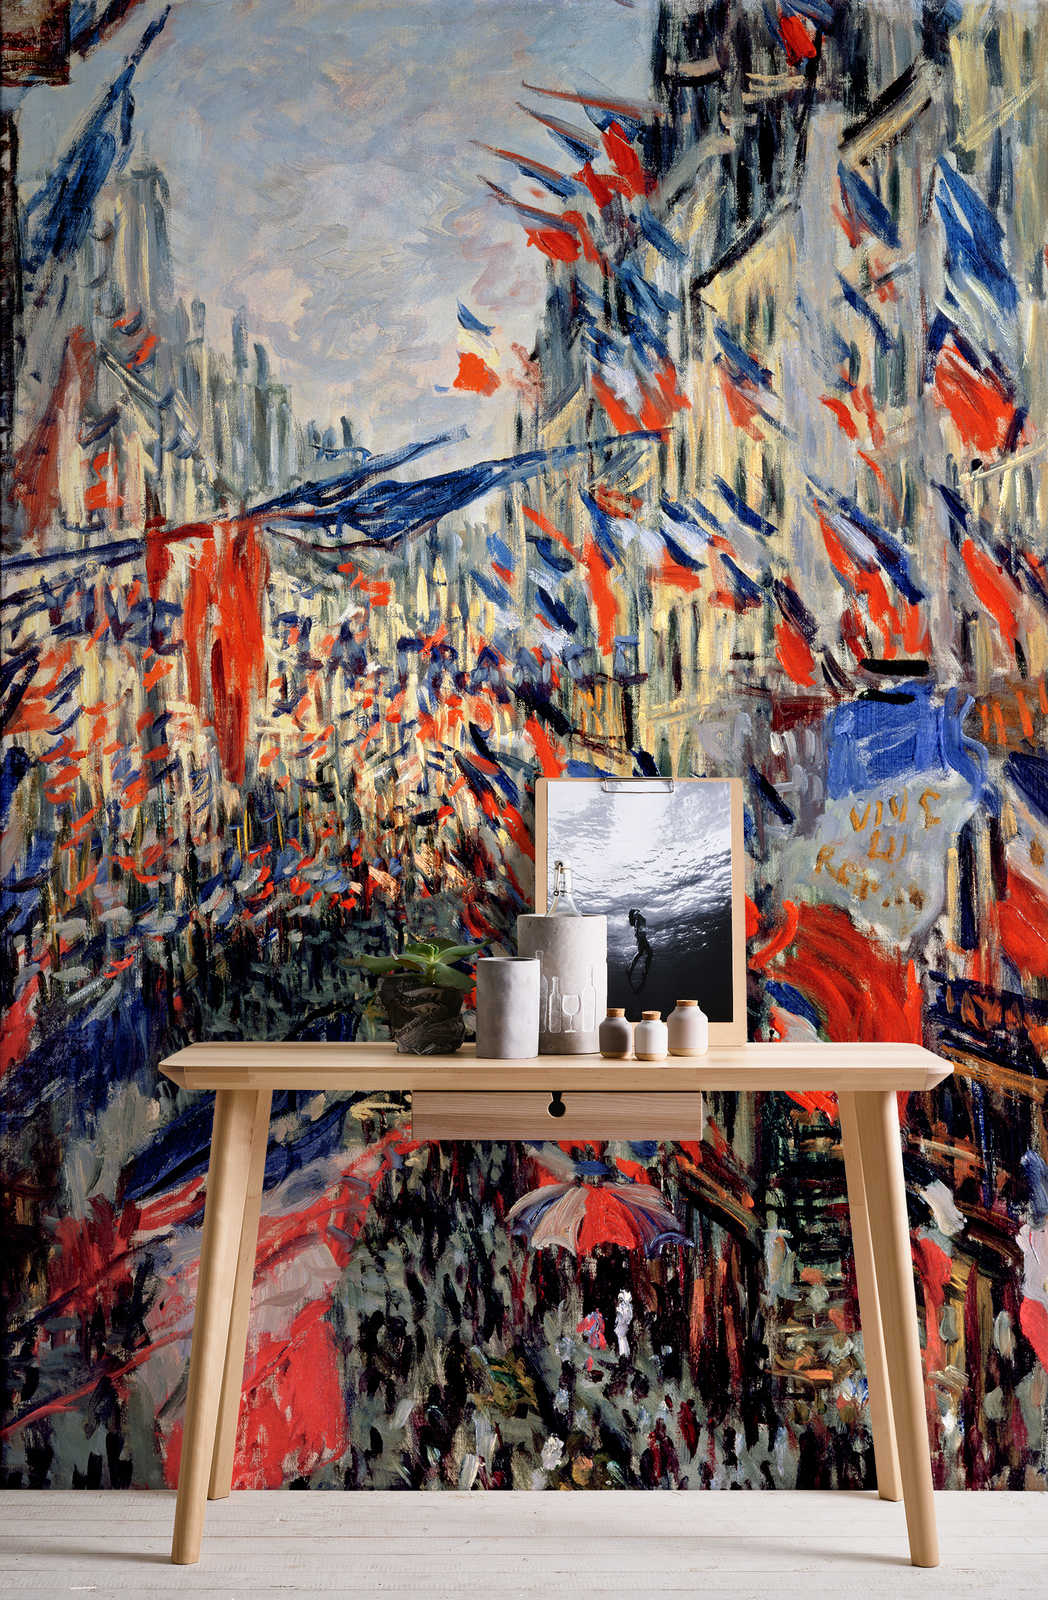             Fototapete "Die Rue Saint-Denis, Feierlichkeiten zum 30. Juni" von Claude Monet
        